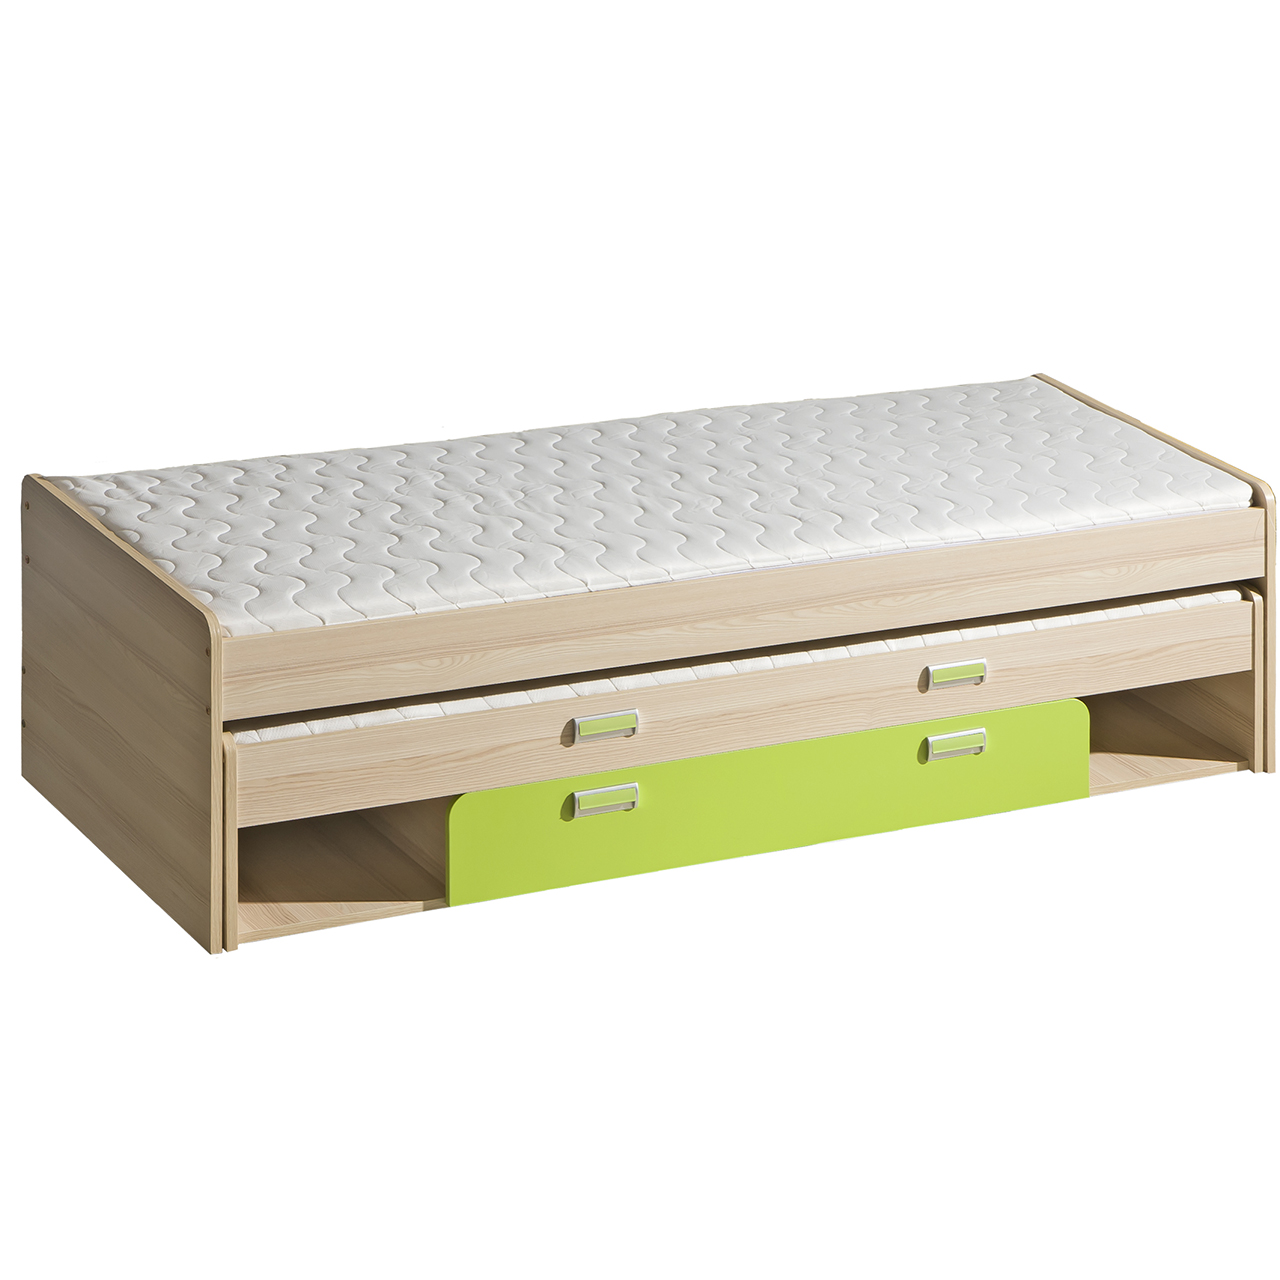 Bunk bed with storage LOREN LR16 ash / green